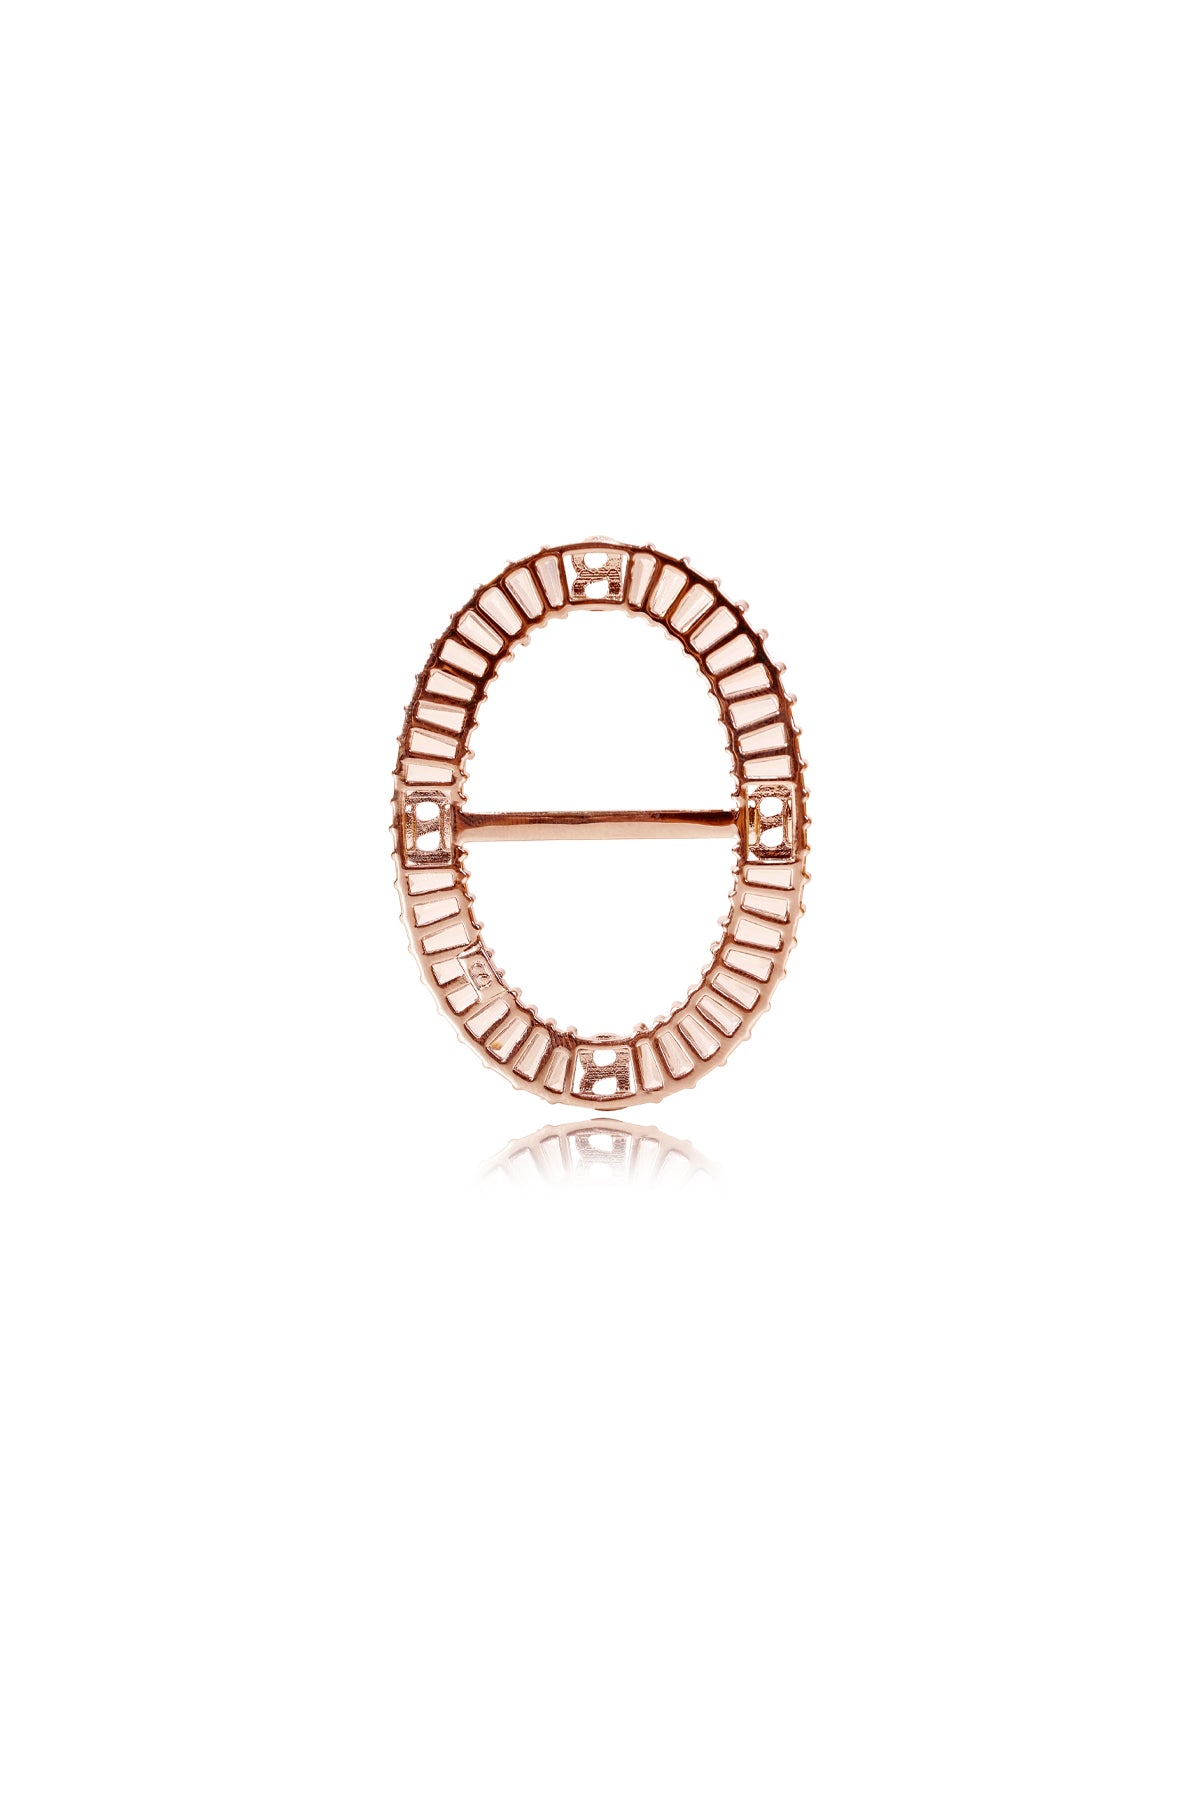 Lavish Oval Ring Brooch - Rose Gold